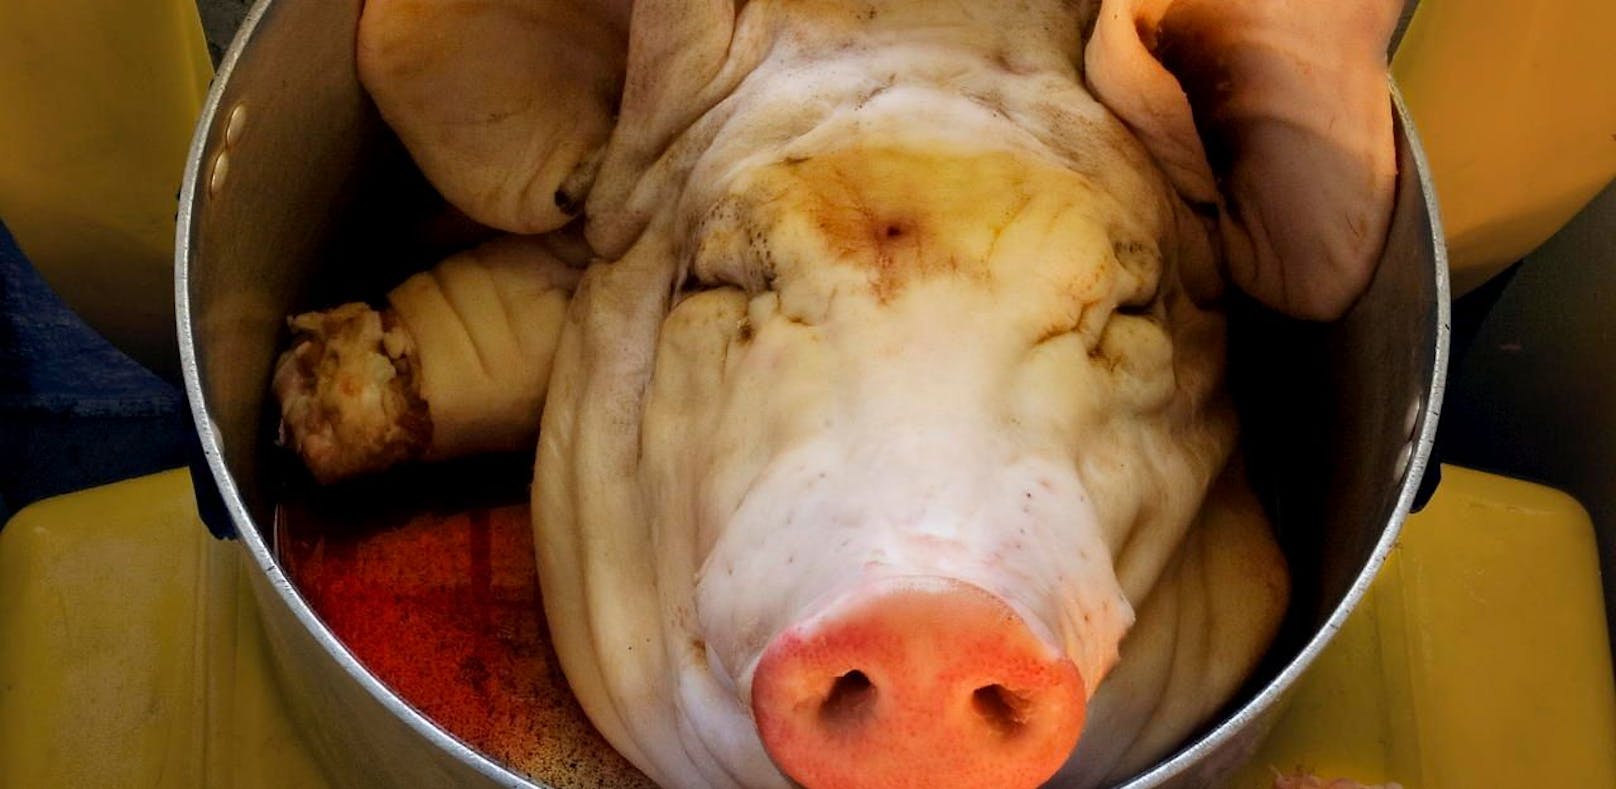 Empörung: Schweinekopf vor Flüchtlingsheim